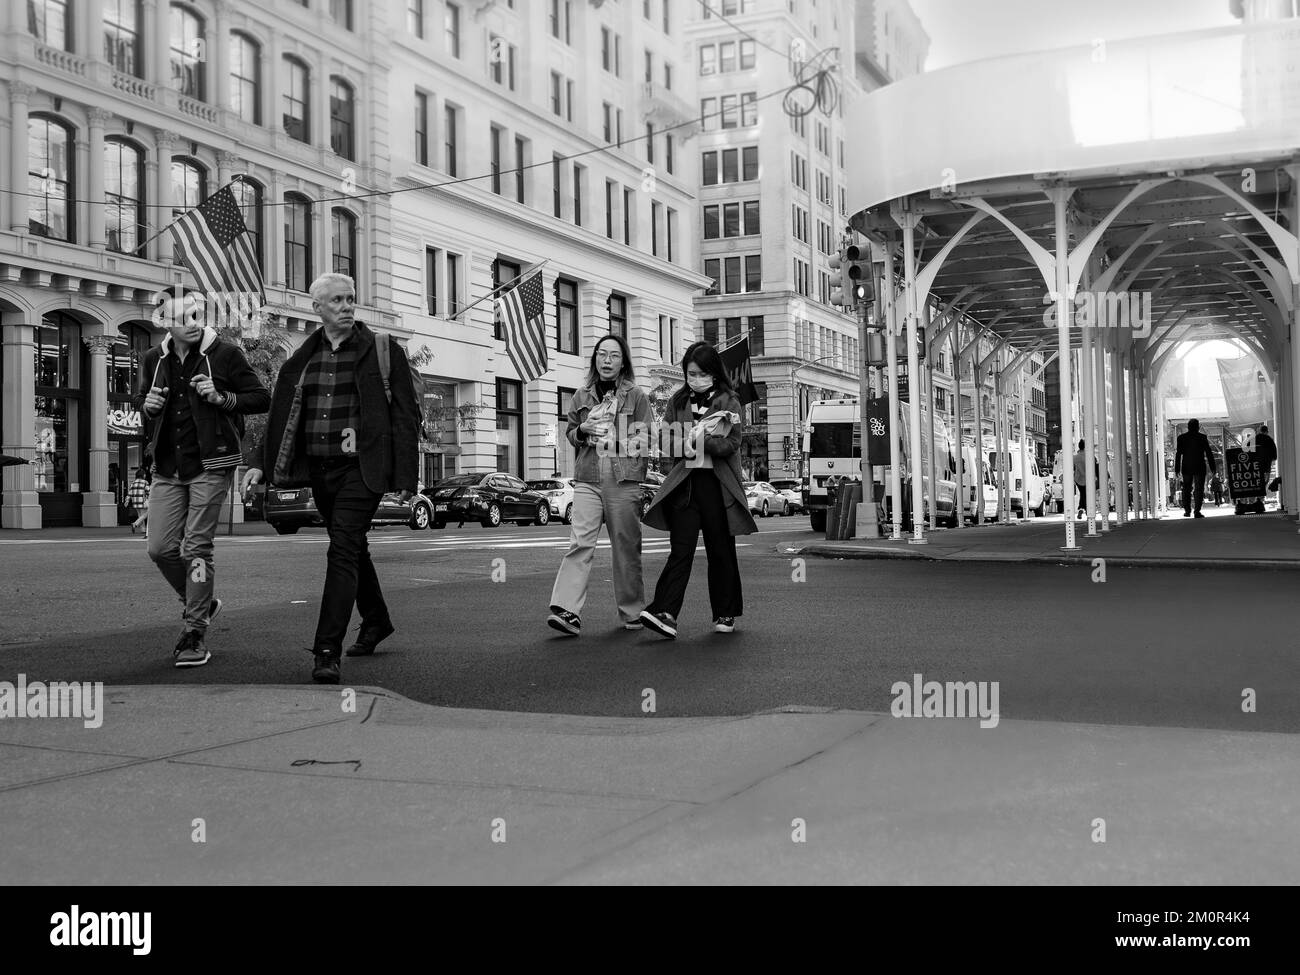 Hommes d'affaires et femmes asiatiques traversant la rue dans la ville de New York - photographie de rue en noir et blanc, Manhattan, États-Unis. Banque D'Images